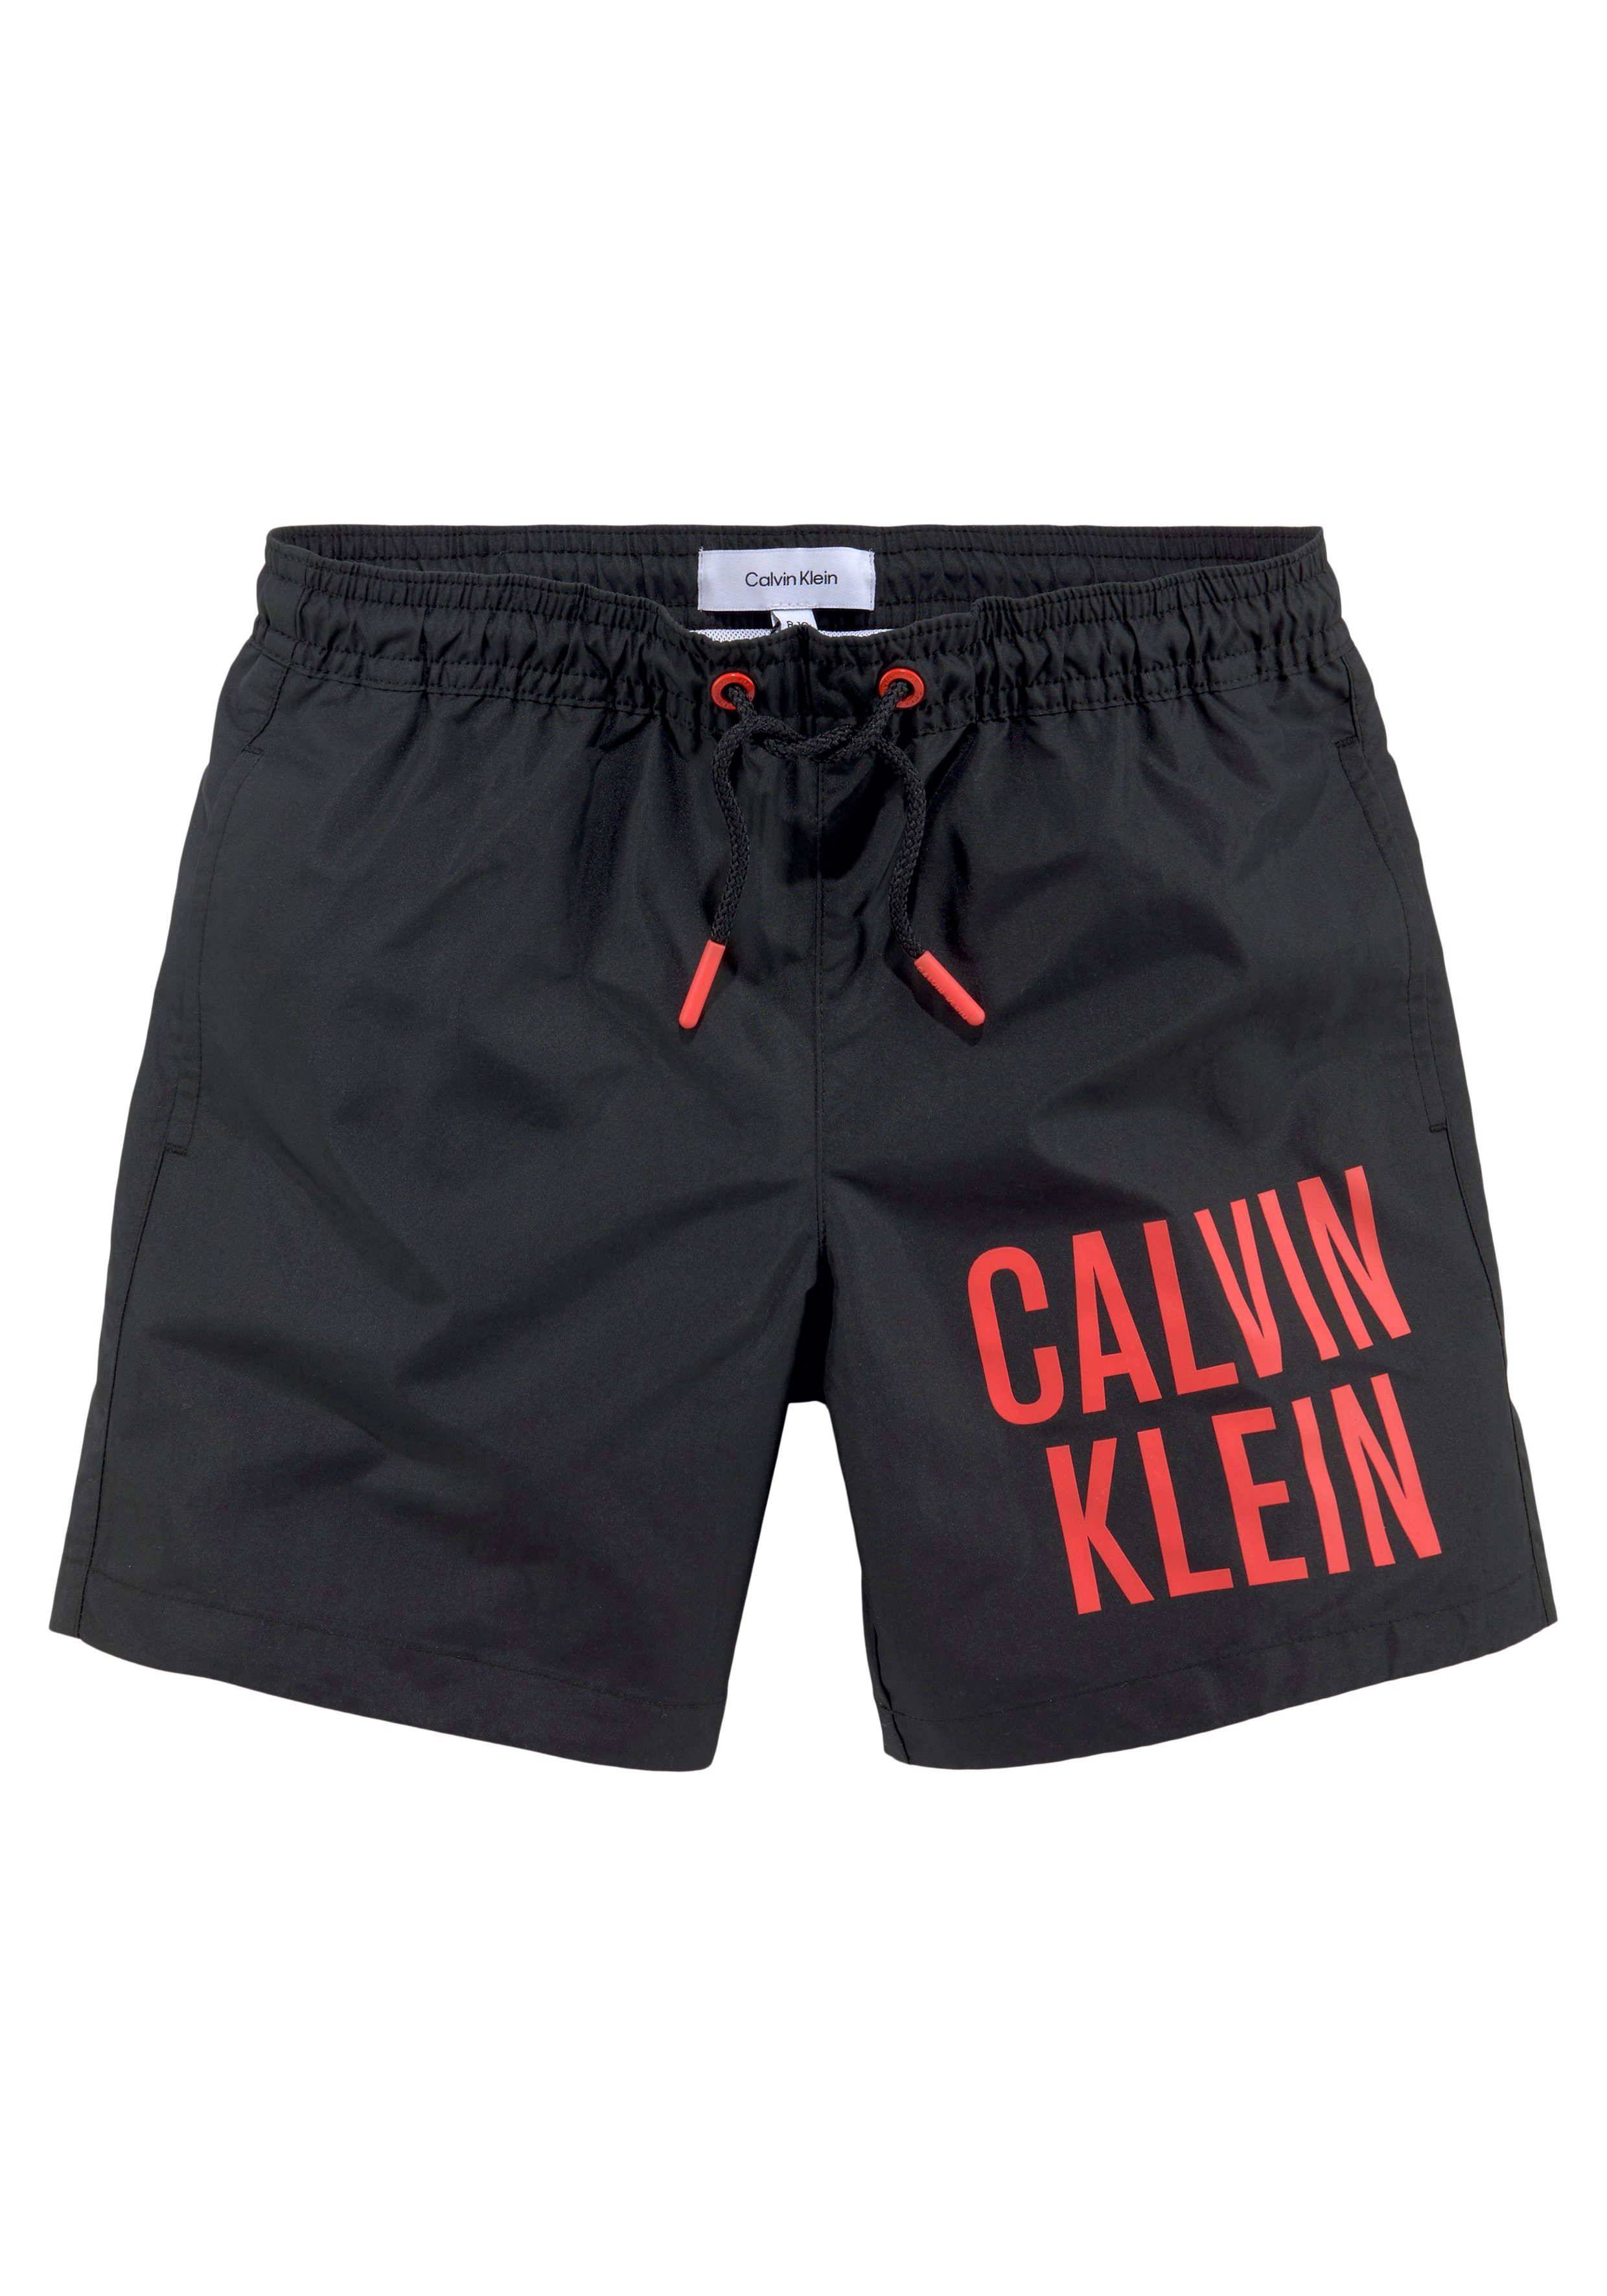 Calvin Klein Klein Pvh-Black MEDIUM mit Schriftzug Calvin Badeshorts DRAWSTRING Swimwear